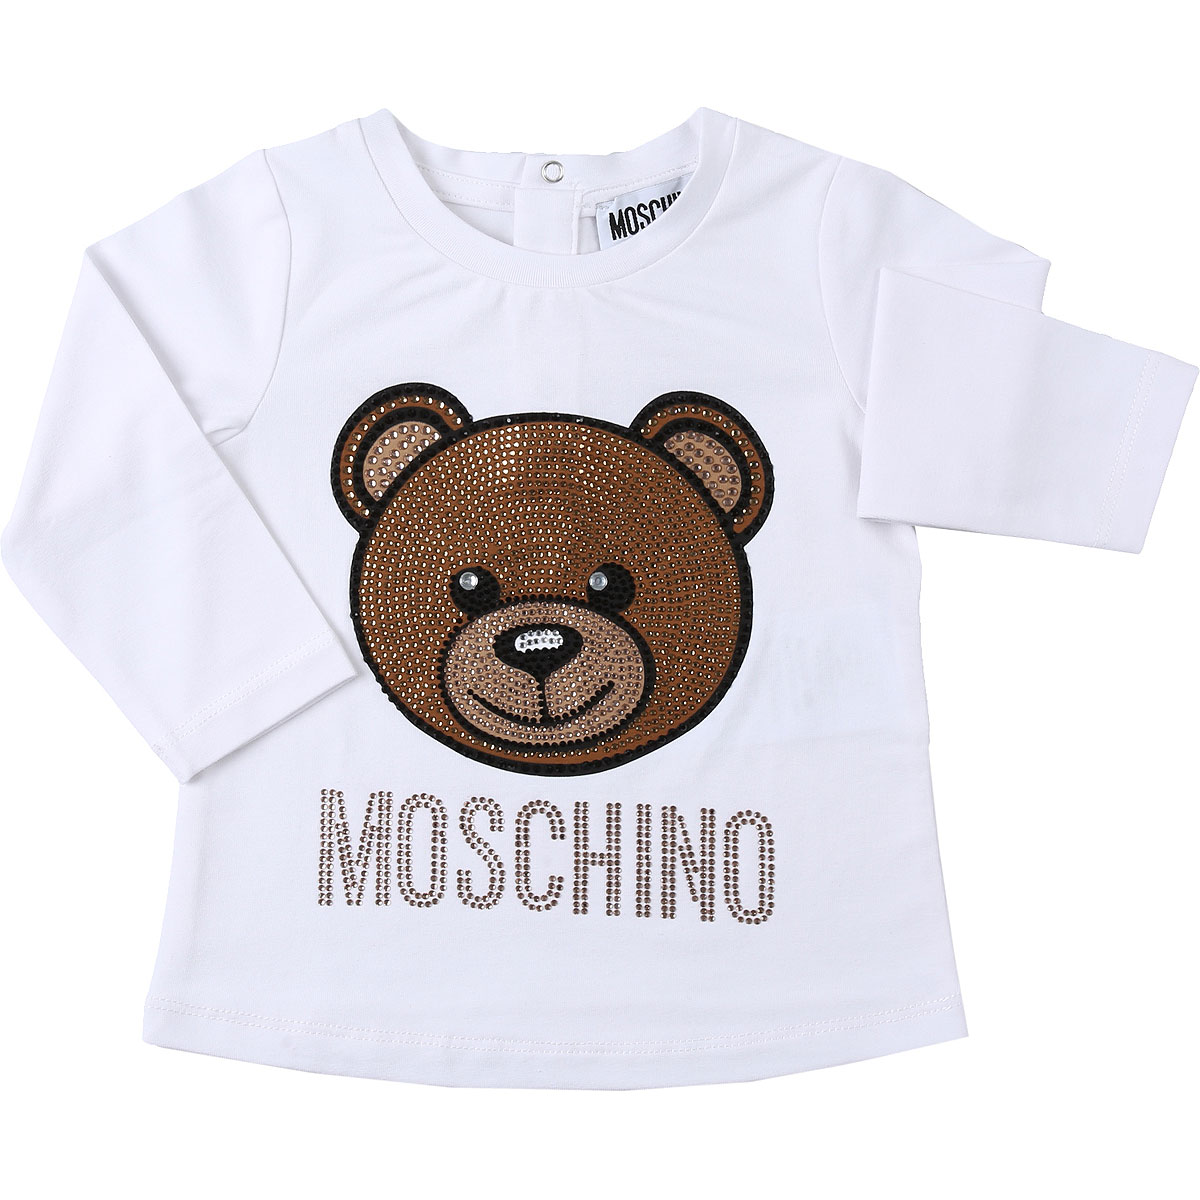 Moschino Baby T-Shirt für Mädchen Günstig im Sale, Weiss, Baumwolle, 2017, 12M 18M 24M 2Y 3Y 6M 9M